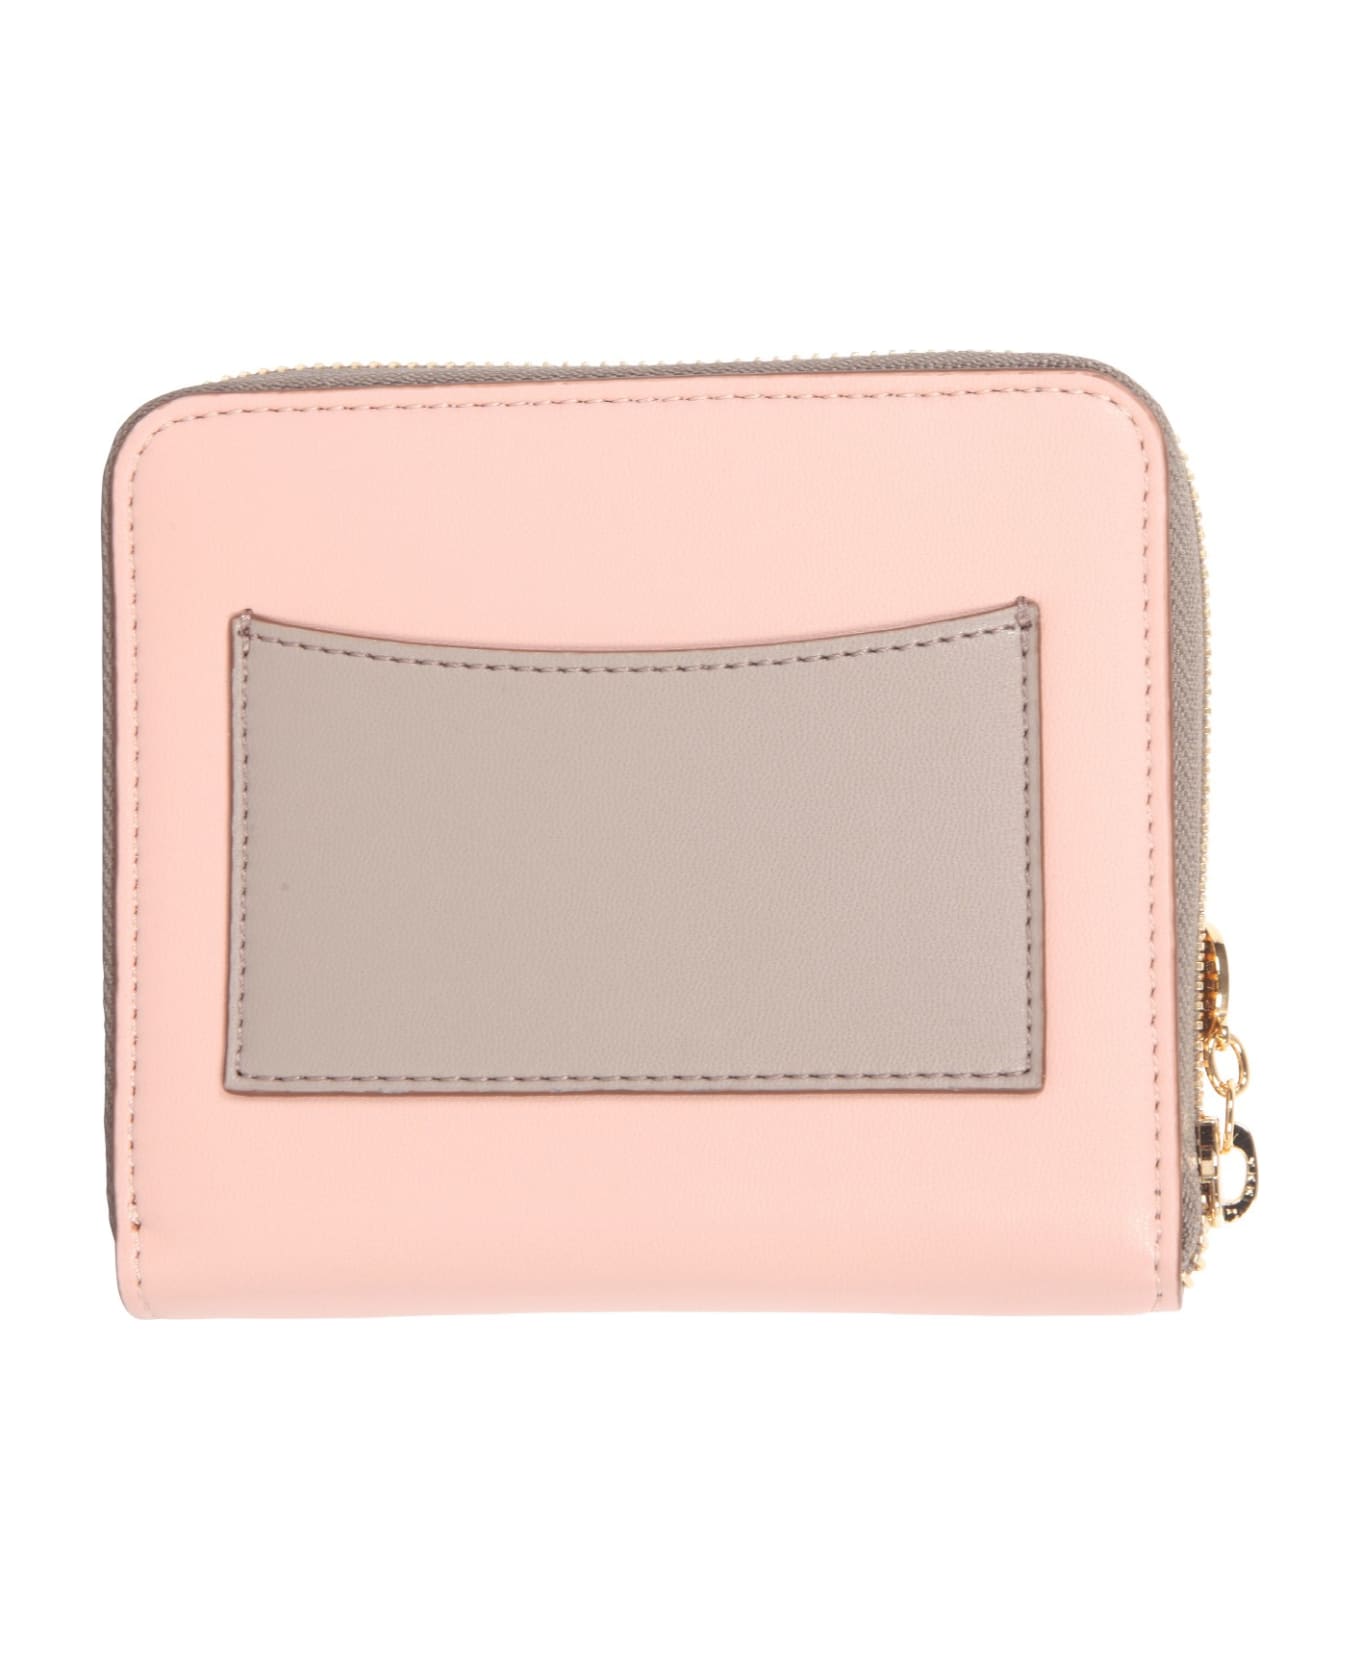 Stella McCartney Zip Around Mini Wallet - Blush